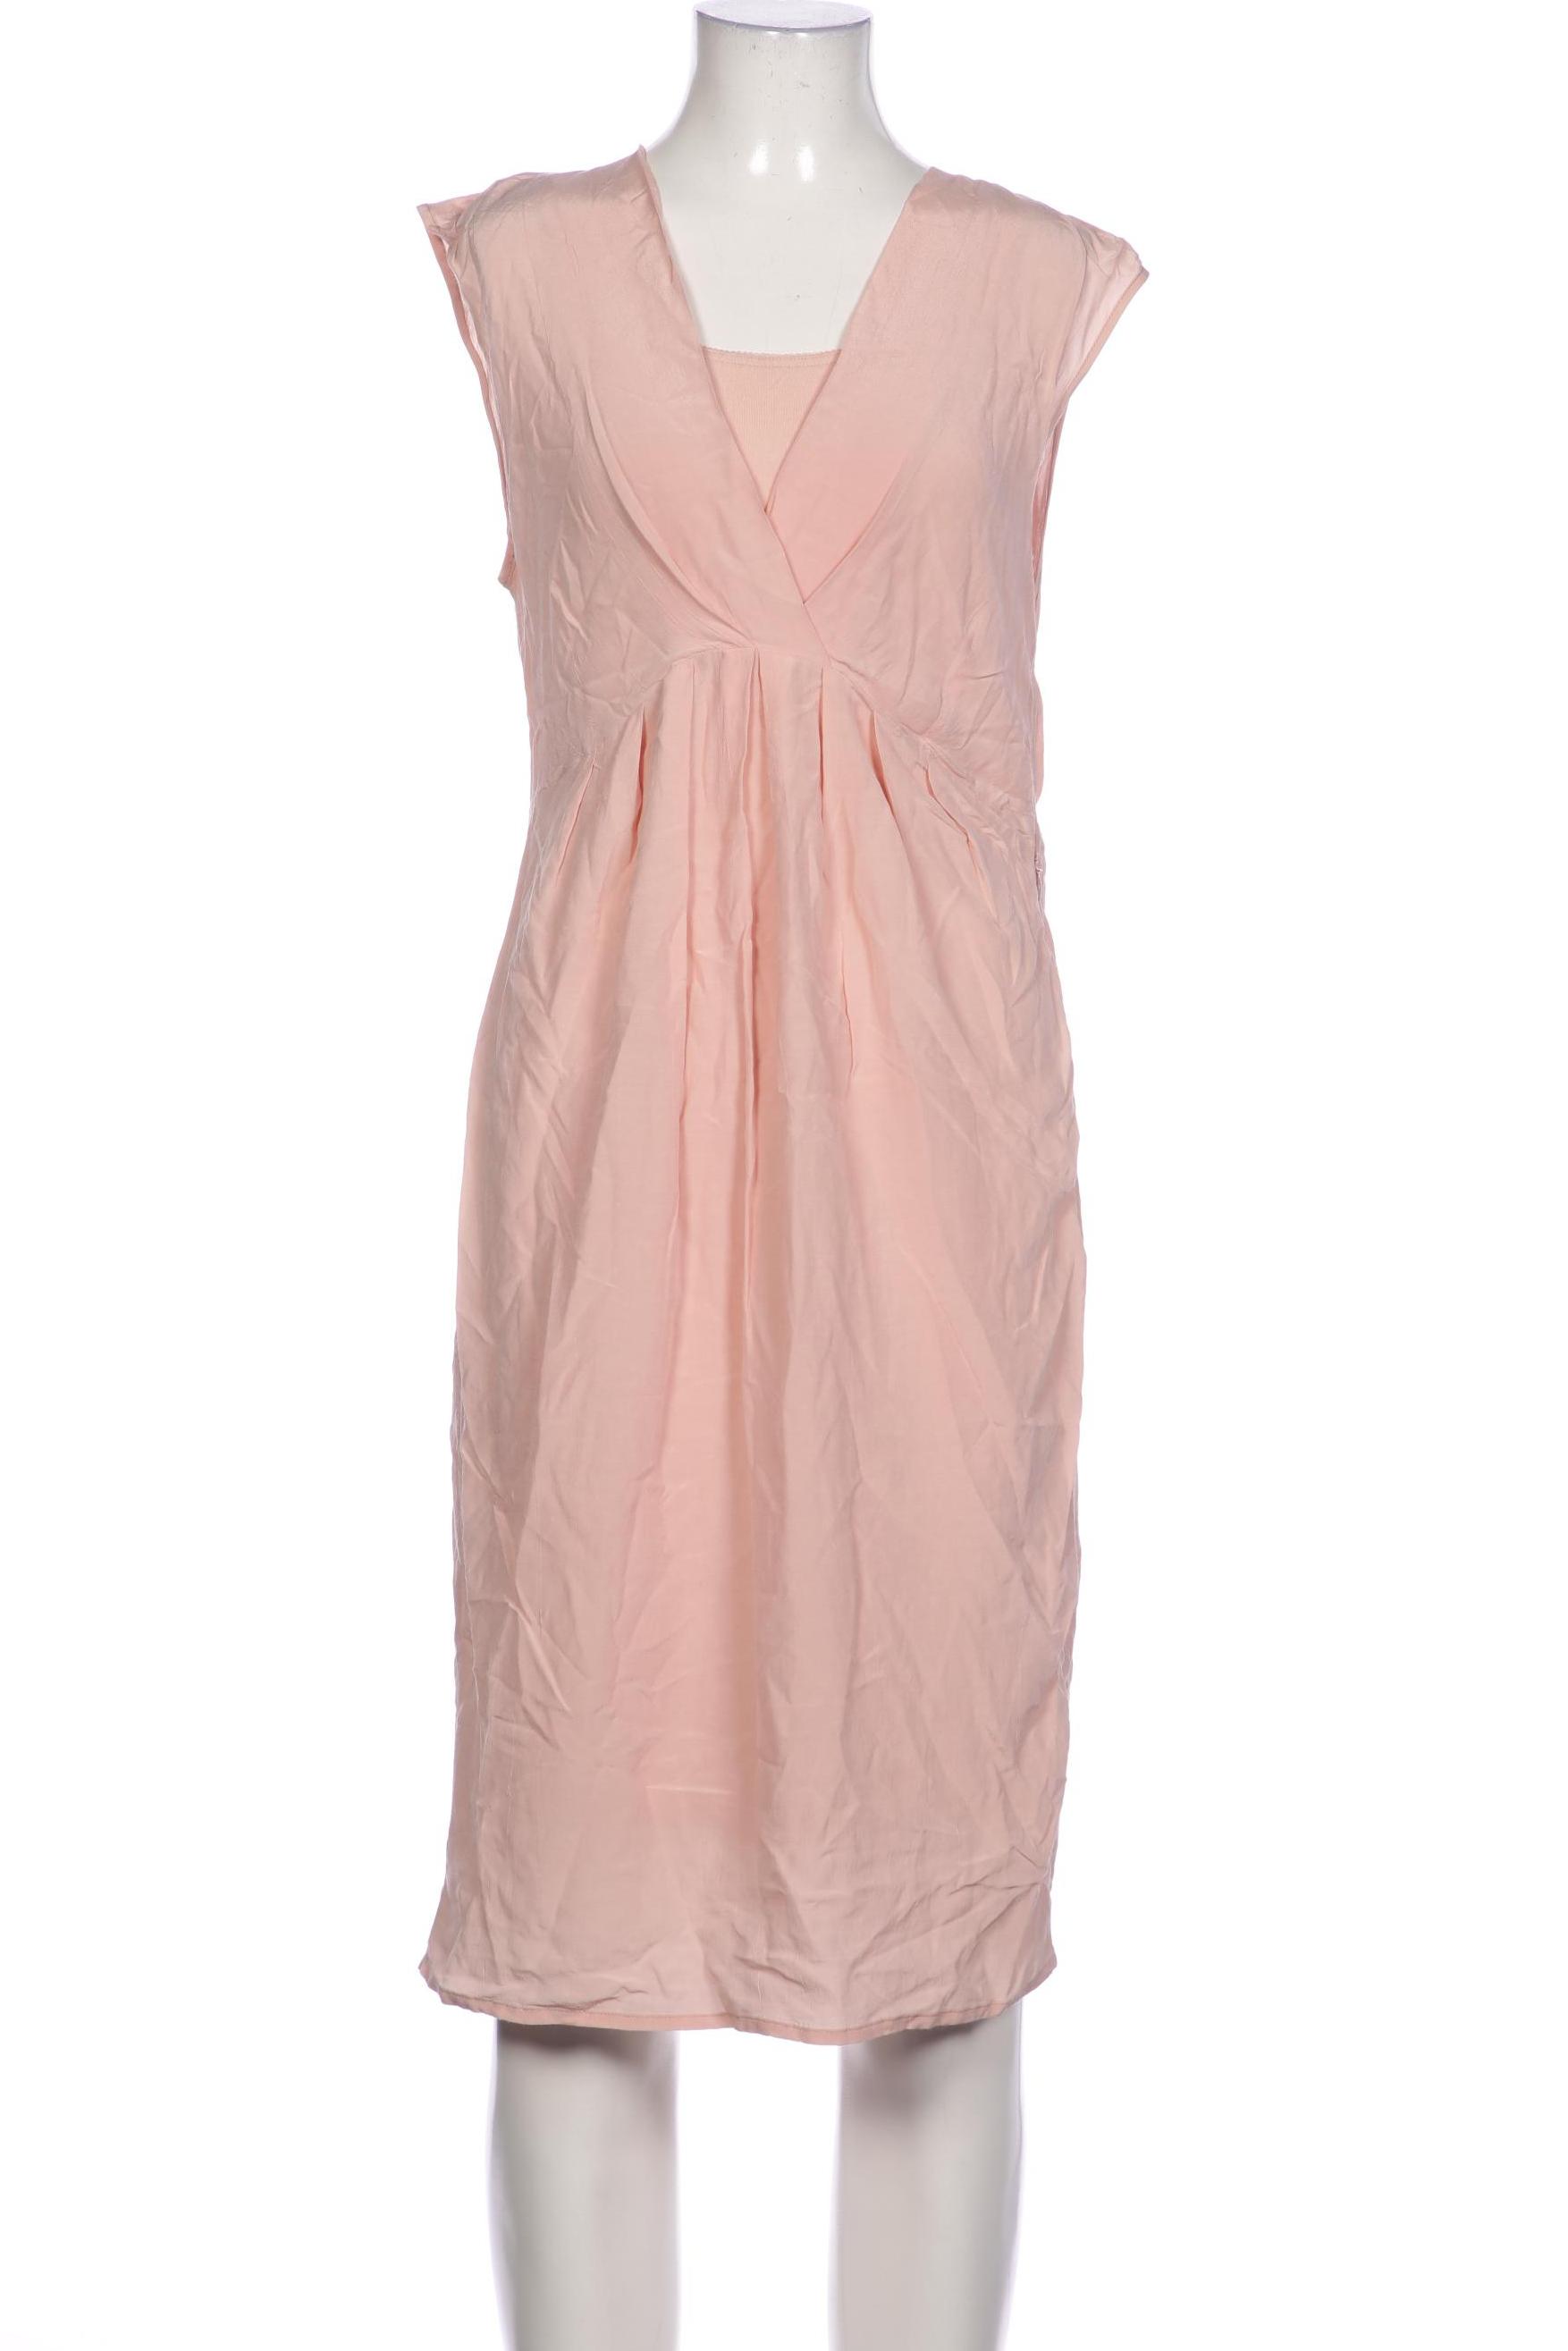 EXPRESSO Damen Kleid, pink von EXPRESSO